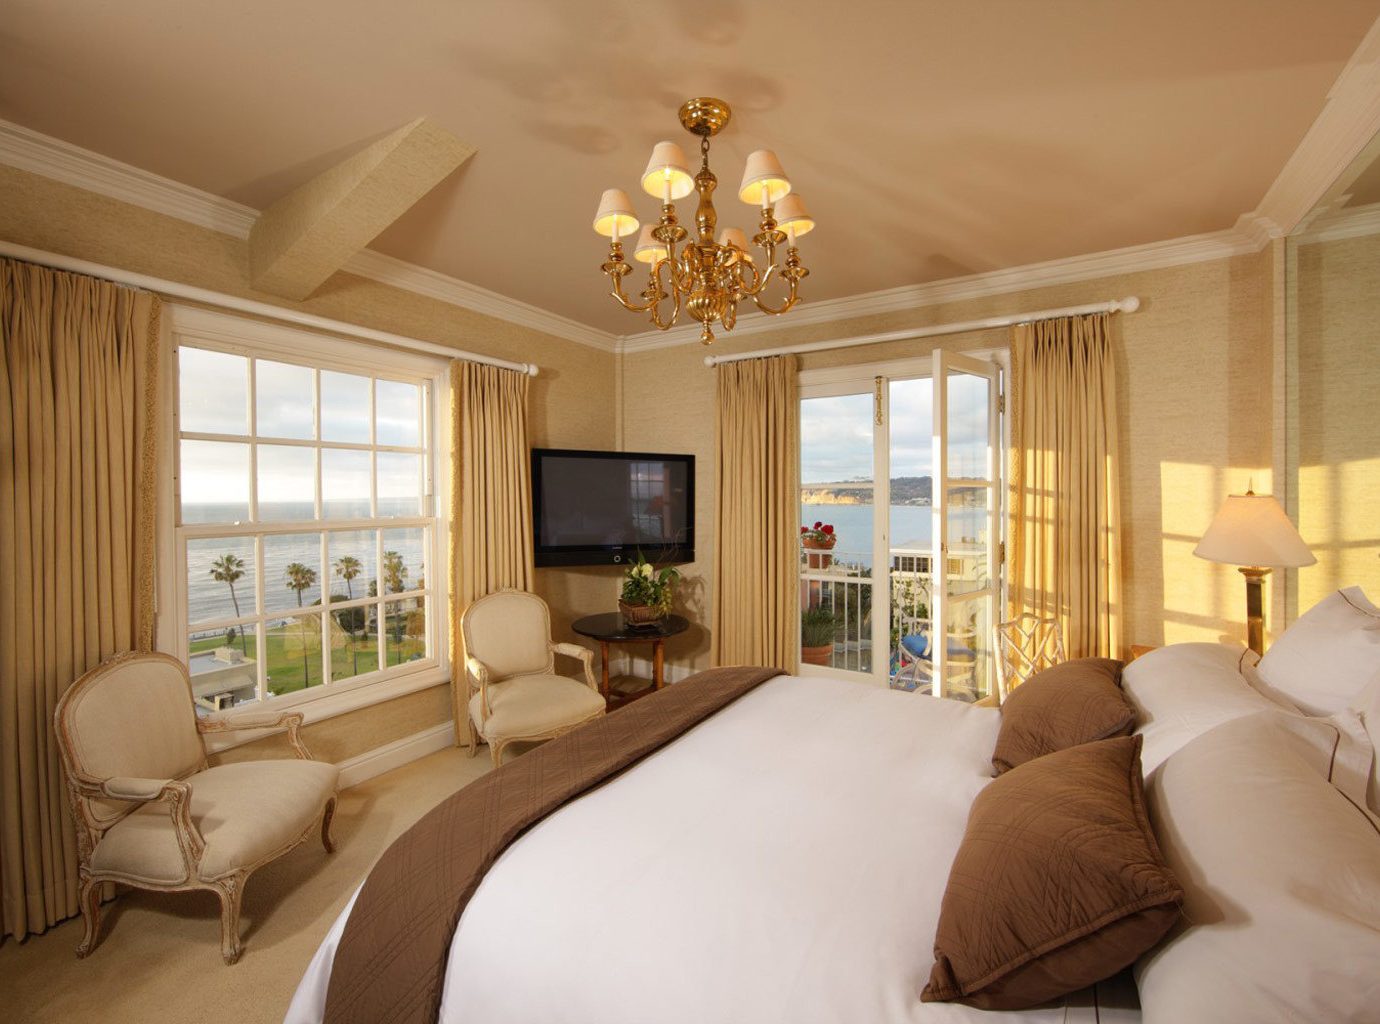 Bedroom At La Valencia Hotel In San Diego, Ca